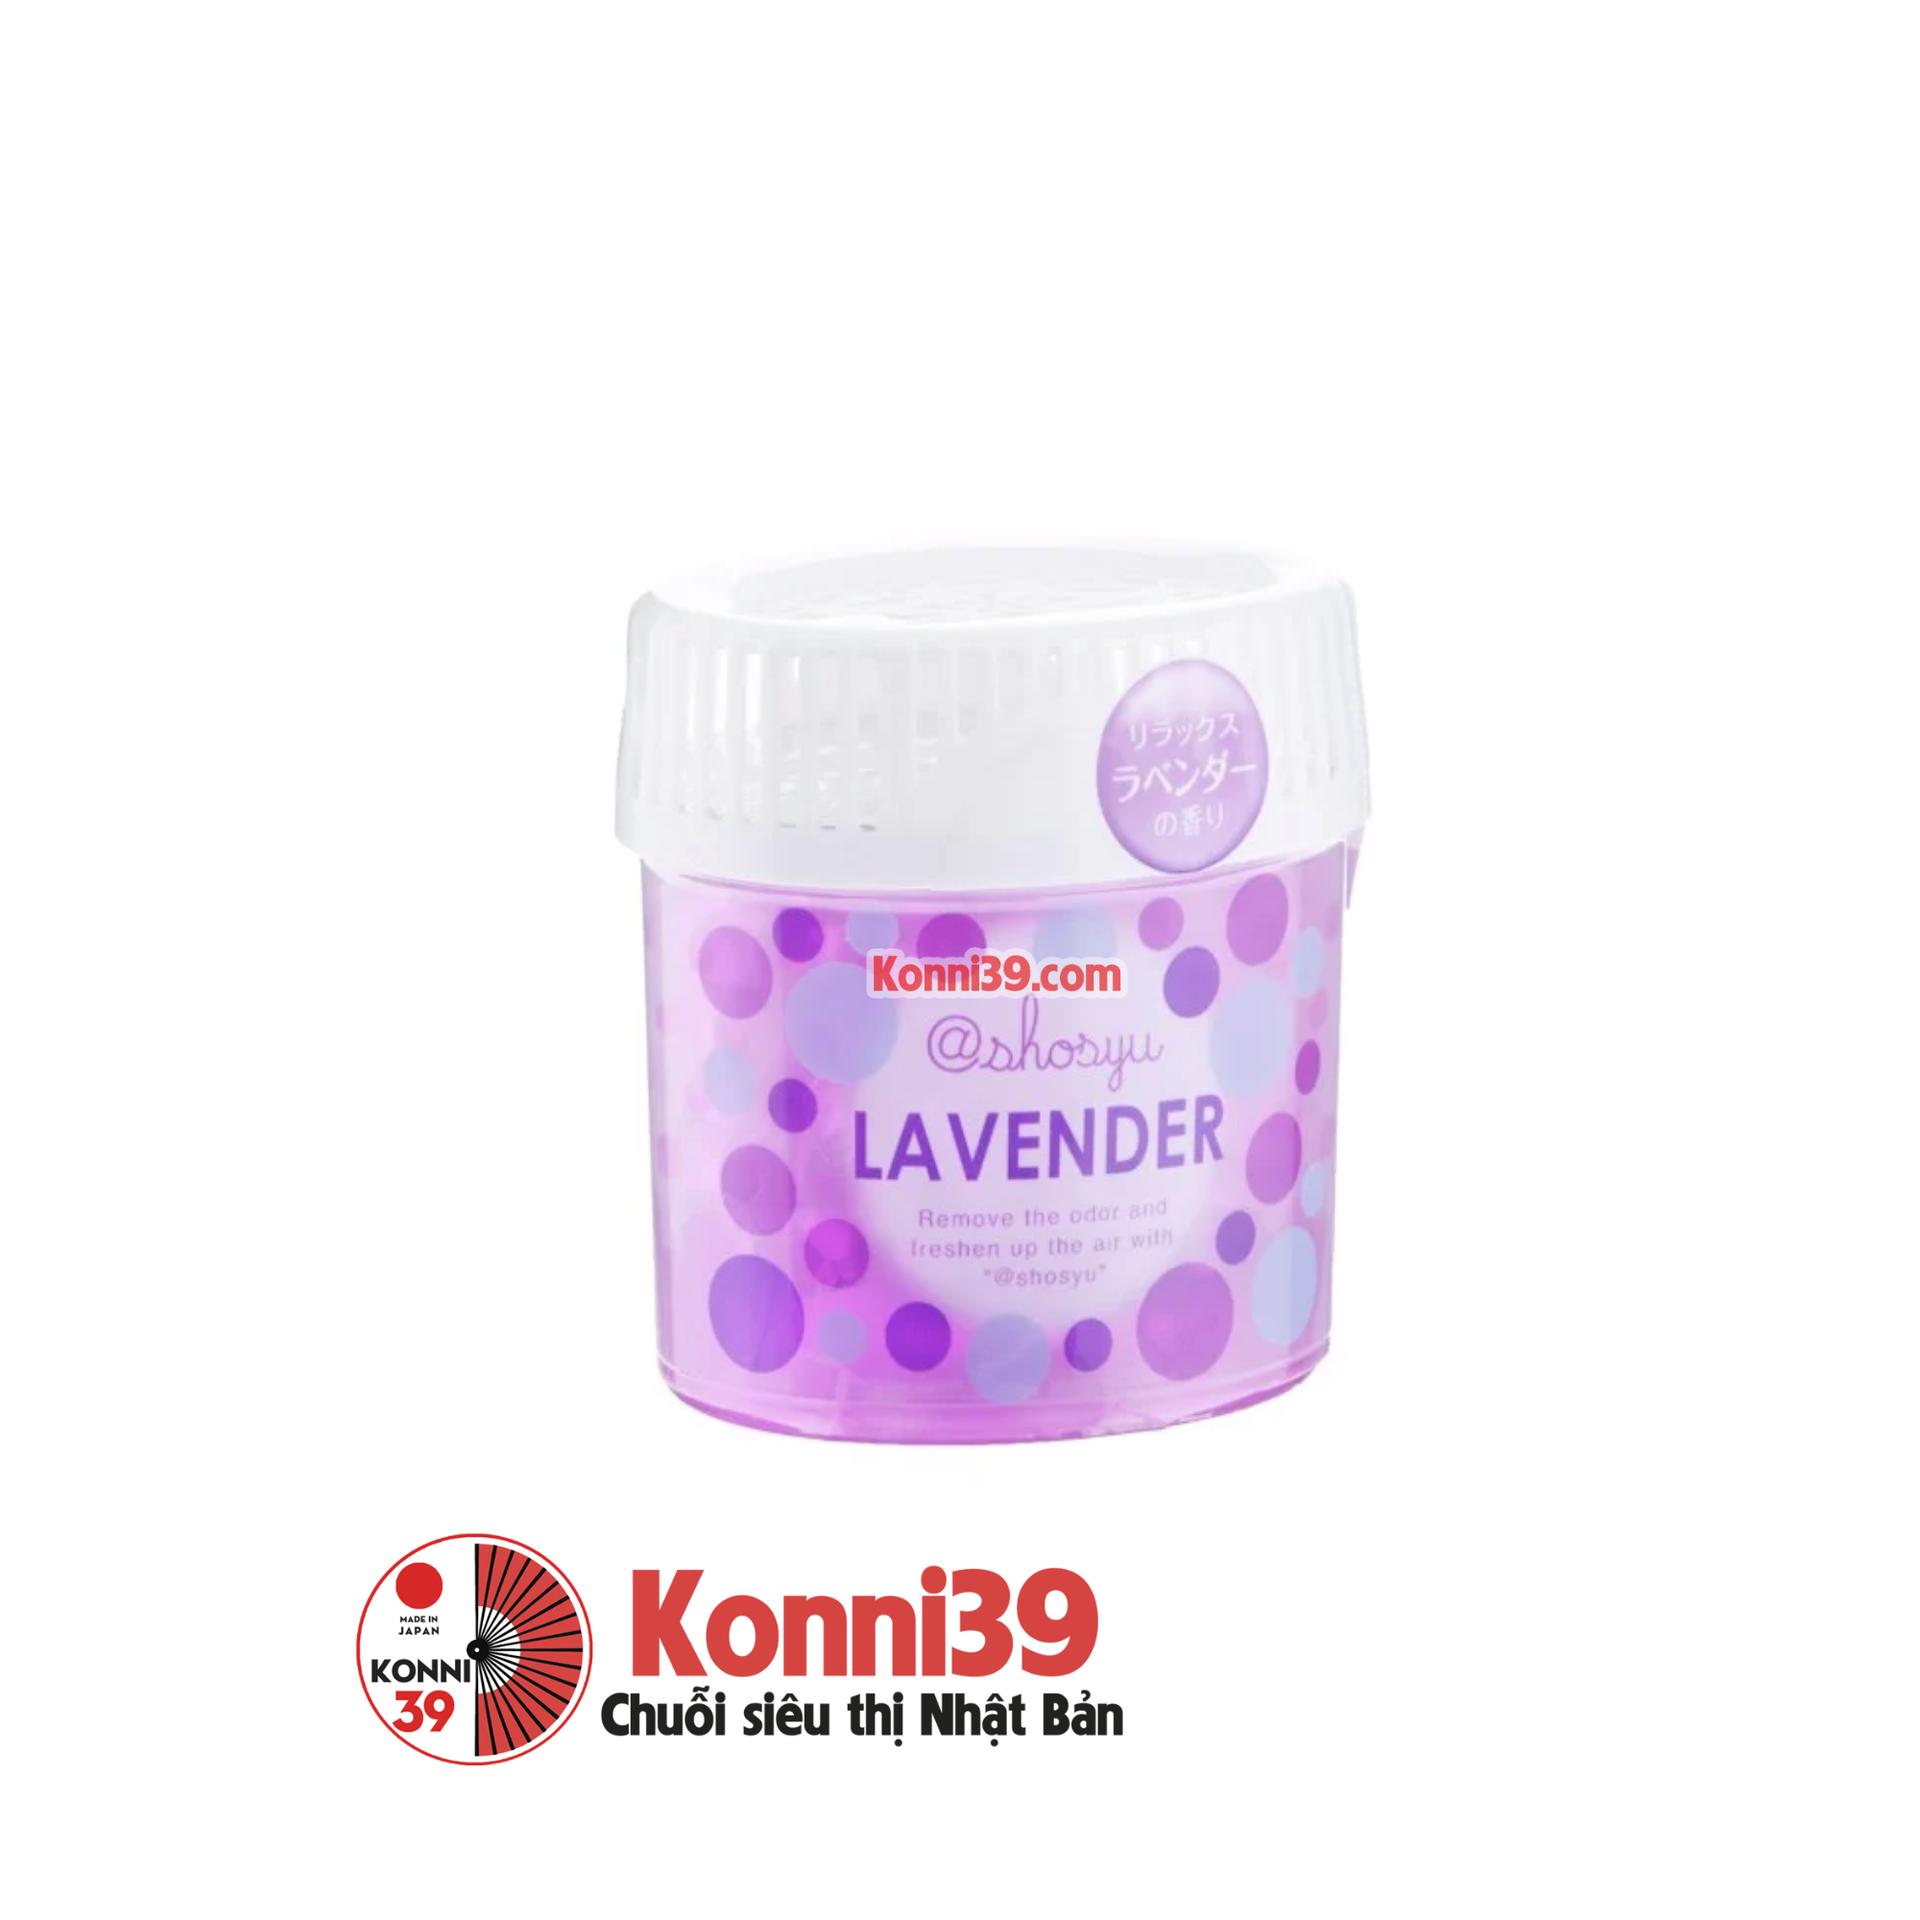 Sáp khử mùi 150g KOKUBO (lavender)-Chuỗi siêu thị Nhật Bản - MADE IN JAPAN Konni39 tại Việt Nam